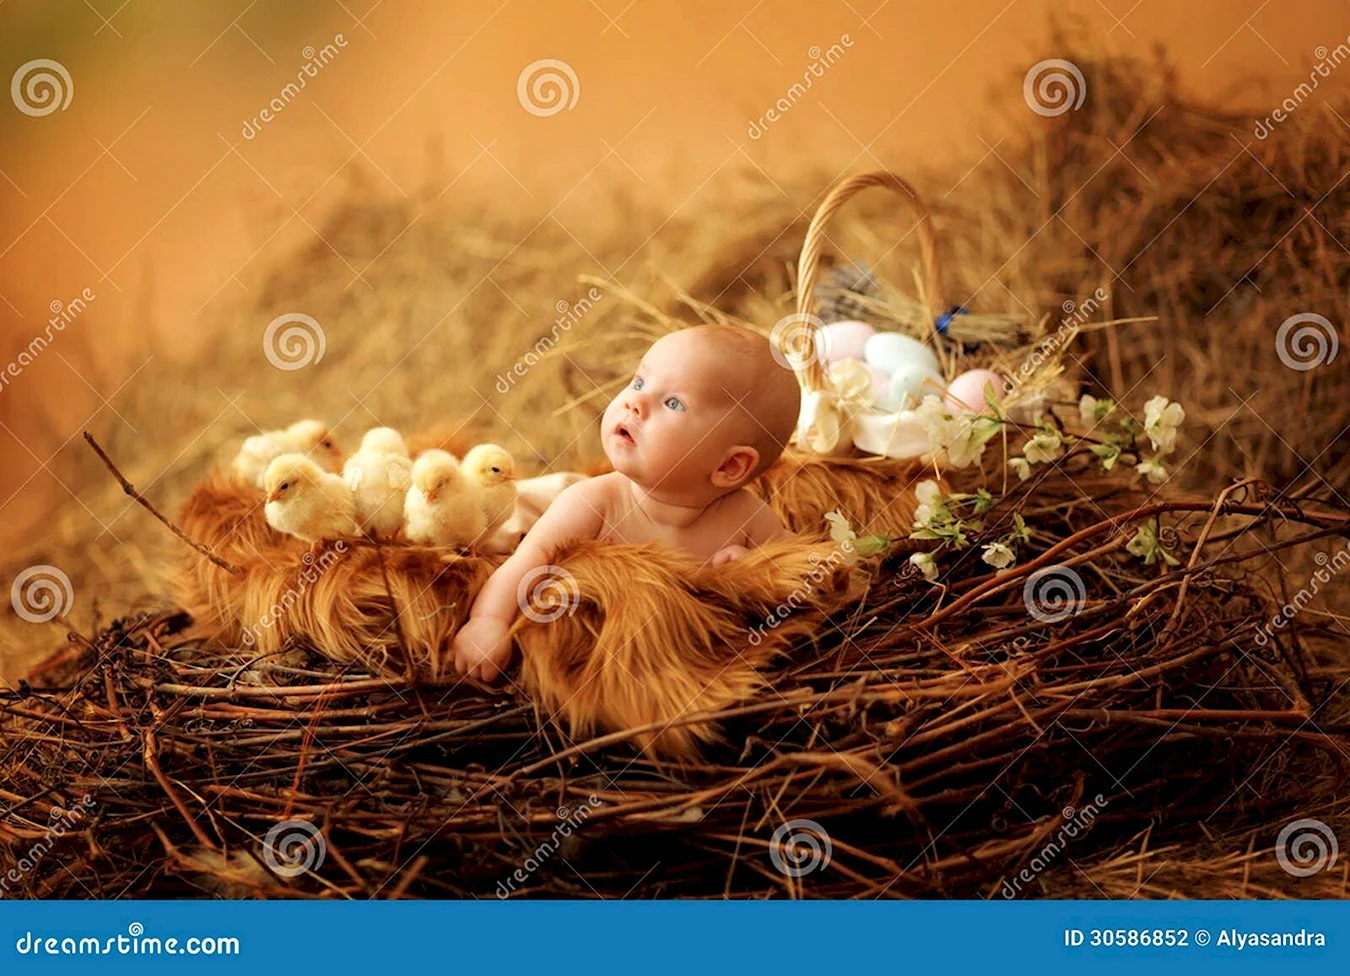 Фотосессия с цыплятами и детьми